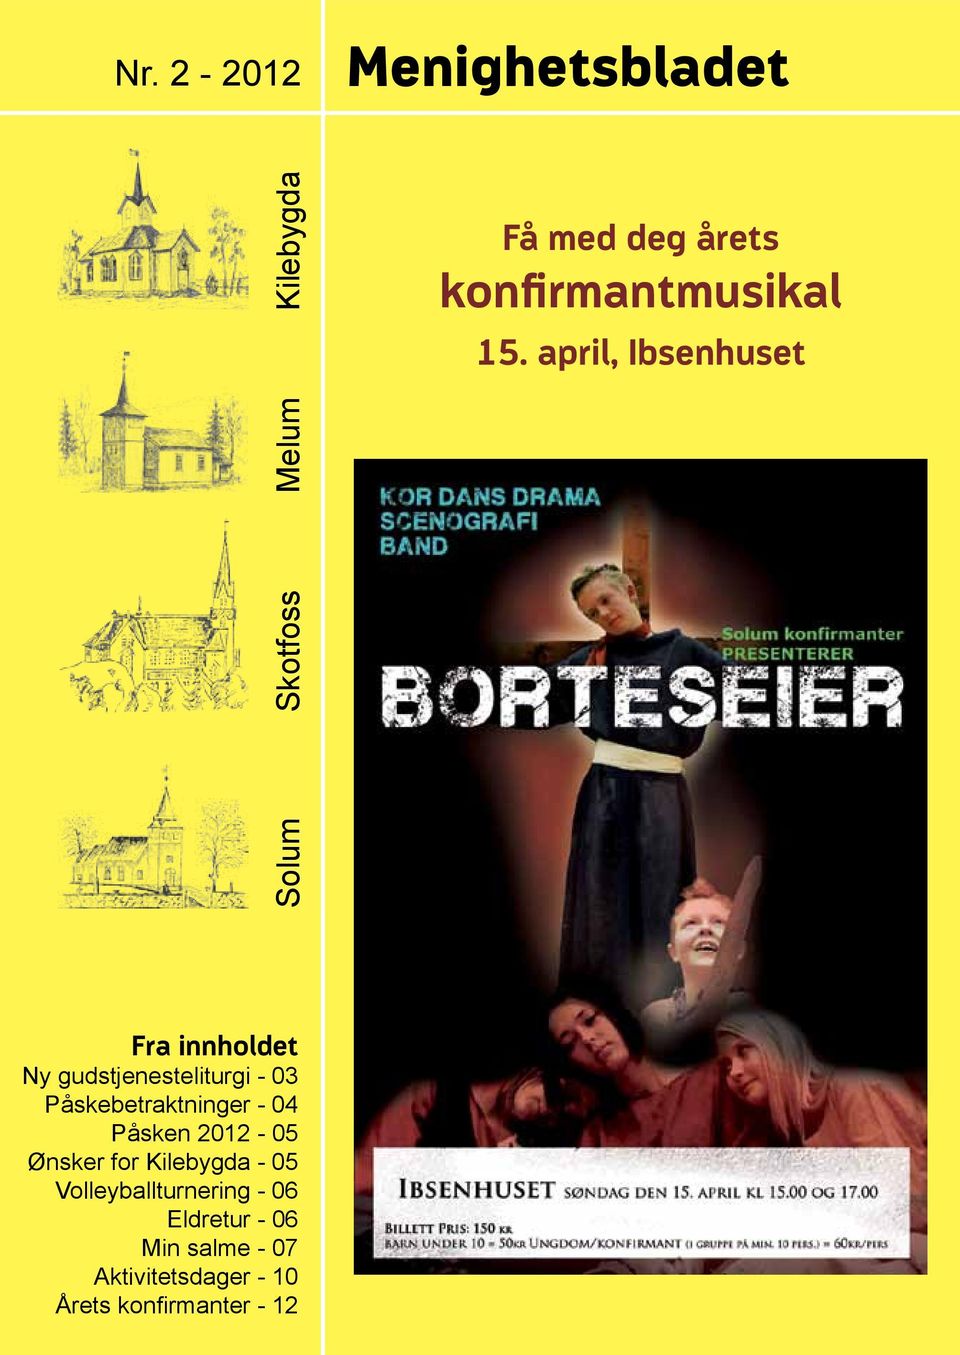 april, Ibsenhuset Fra innholdet Ny gudstjenesteliturgi - 03 Påskebetraktninger